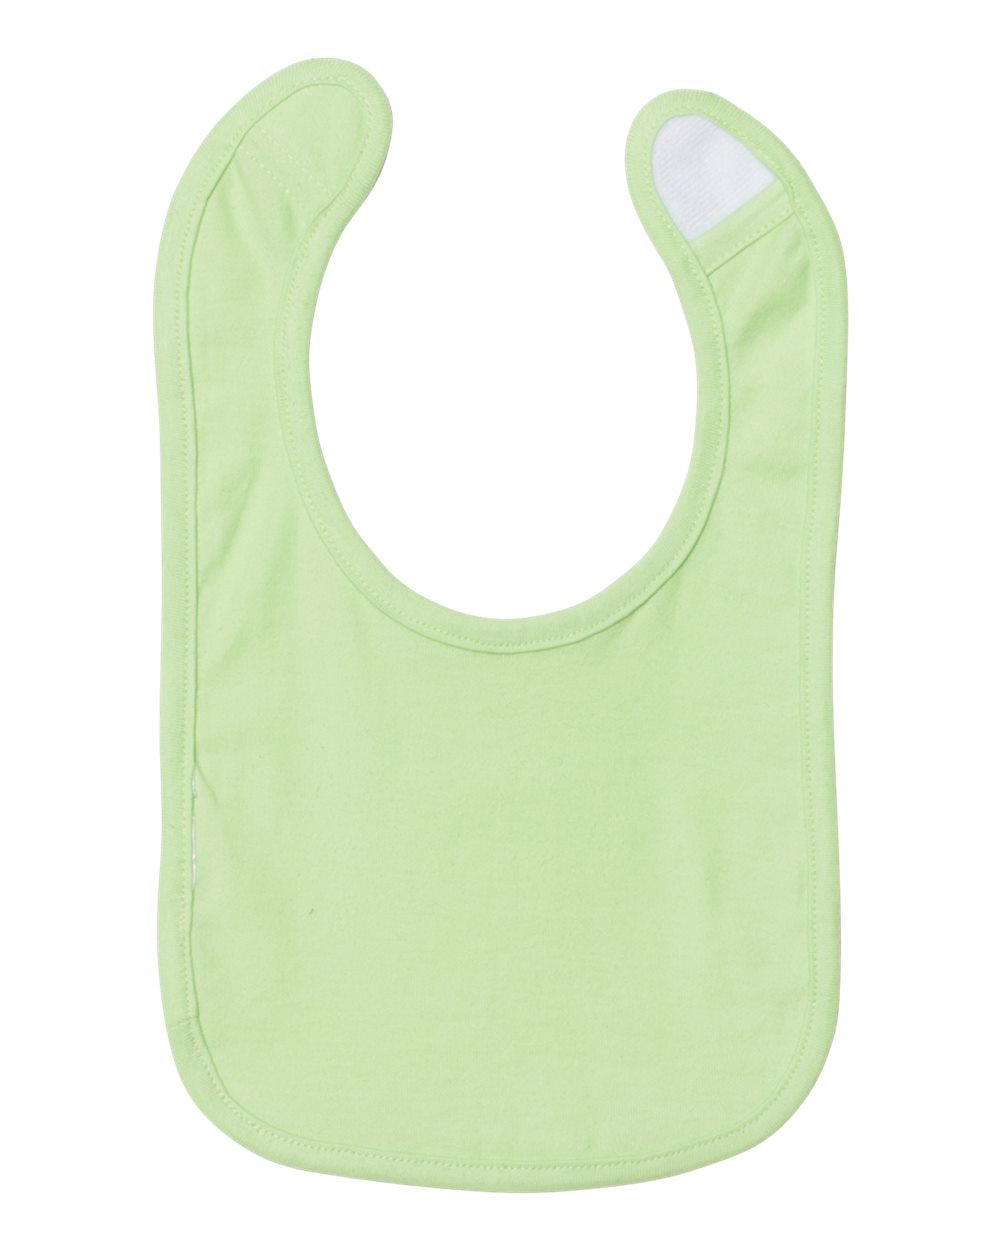 rabbit skins infant premium jersey bib mint green